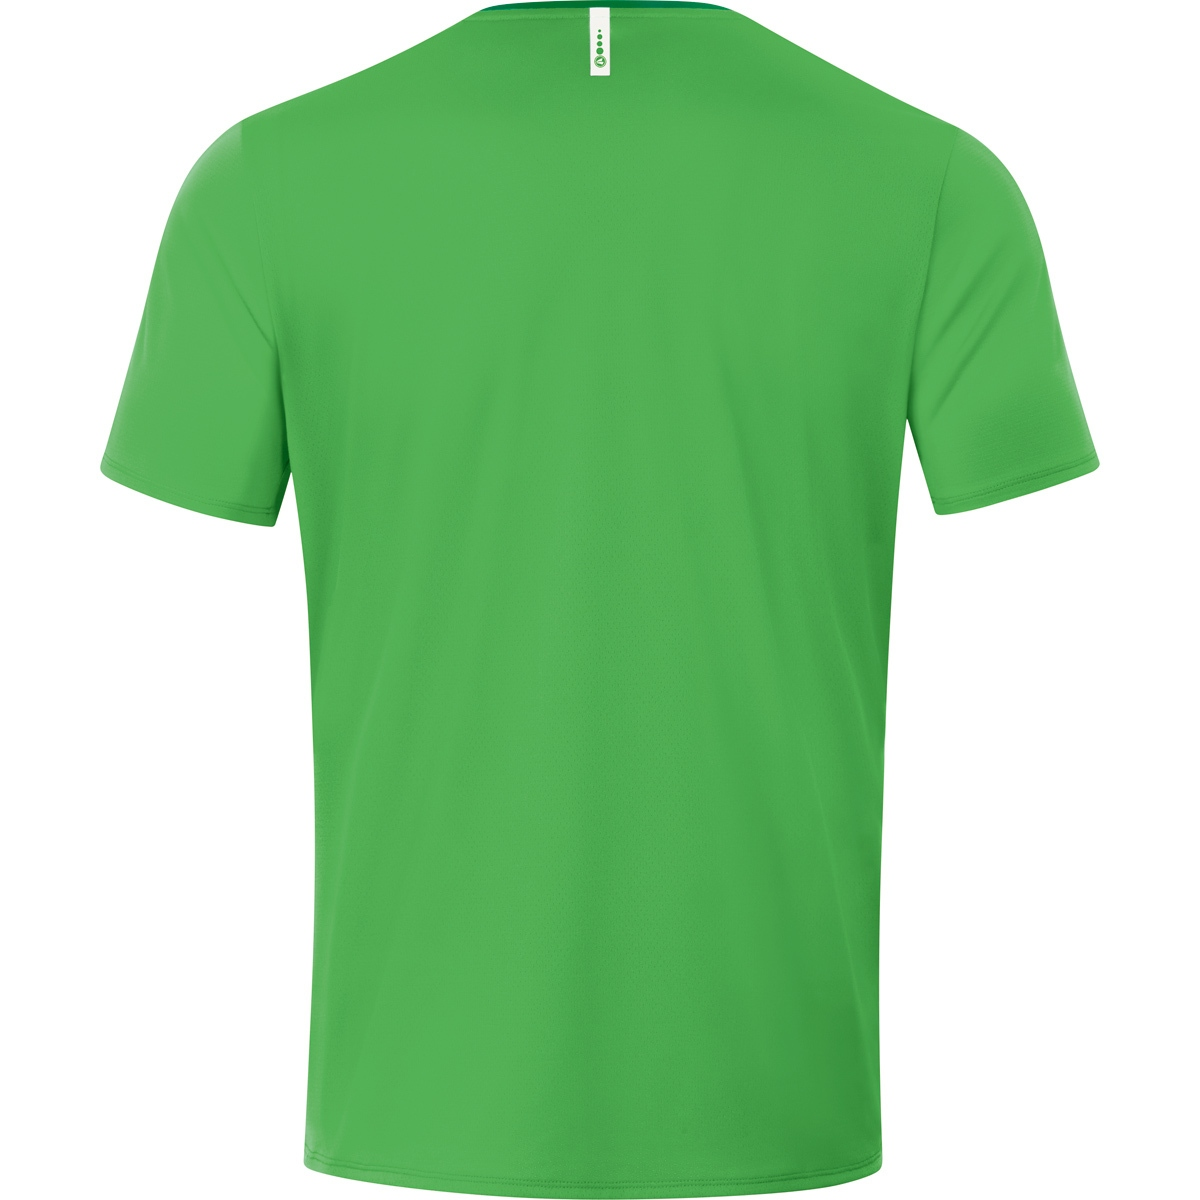 JAKO 2.0 T-Shirt green/sportgrün, Gr. Champ XXL, 6120 soft Herren,